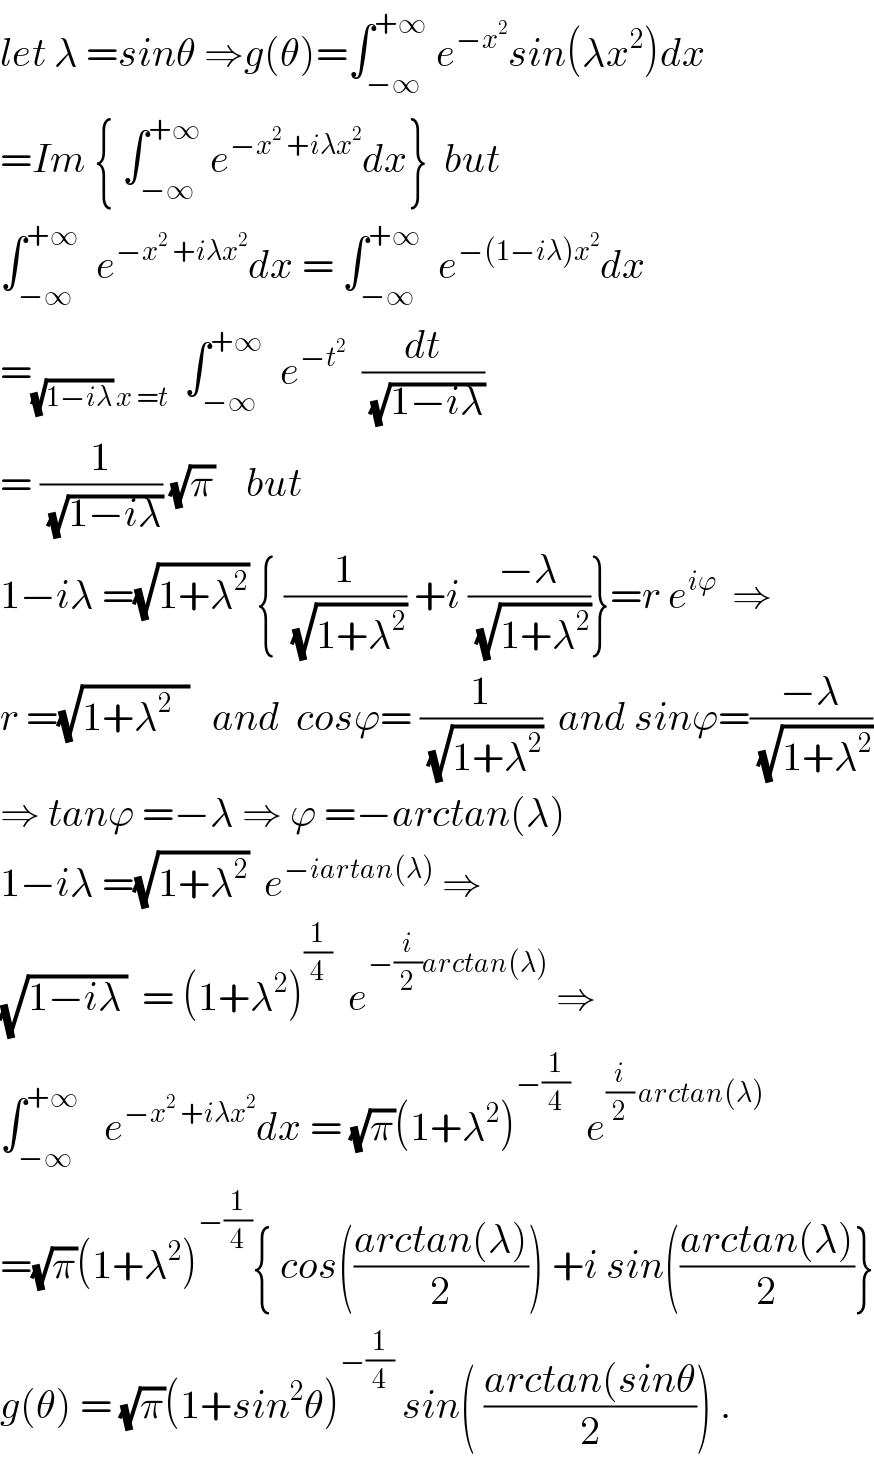 let λ =sinθ ⇒g(θ)=∫_(−∞) ^(+∞)  e^(−x^2 ) sin(λx^2 )dx  =Im { ∫_(−∞) ^(+∞)  e^(−x^2  +iλx^2 ) dx}  but  ∫_(−∞) ^(+∞)   e^(−x^2  +iλx^2 ) dx = ∫_(−∞) ^(+∞)   e^(−(1−iλ)x^2 ) dx  =_((√(1−iλ)) x =t)   ∫_(−∞) ^(+∞)   e^(−t^2 )   (dt/(√(1−iλ)))  = (1/(√(1−iλ))) (√π)    but  1−iλ =(√(1+λ^2 )) { (1/(√(1+λ^2 ))) +i ((−λ)/(√(1+λ^2 )))}=r e^(iϕ)   ⇒  r =(√(1+λ^2   ))   and  cosϕ= (1/(√(1+λ^2 )))  and sinϕ=((−λ)/(√(1+λ^2 )))  ⇒ tanϕ =−λ ⇒ ϕ =−arctan(λ)  1−iλ =(√(1+λ^2 ))  e^(−iartan(λ))  ⇒  (√(1−iλ_  ))  = (1+λ^2 )^(1/4)   e^(−(i/2)arctan(λ))  ⇒  ∫_(−∞) ^(+∞)    e^(−x^2  +iλx^2 ) dx = (√π)(1+λ^2 )^(−(1/4))   e^((i/2) arctan(λ))   =(√π)(1+λ^2 )^(−(1/4)) { cos(((arctan(λ))/2)) +i sin(((arctan(λ))/2)}  g(θ) = (√π)(1+sin^2 θ)^(−(1/4))  sin( ((arctan(sinθ)/2)) .  